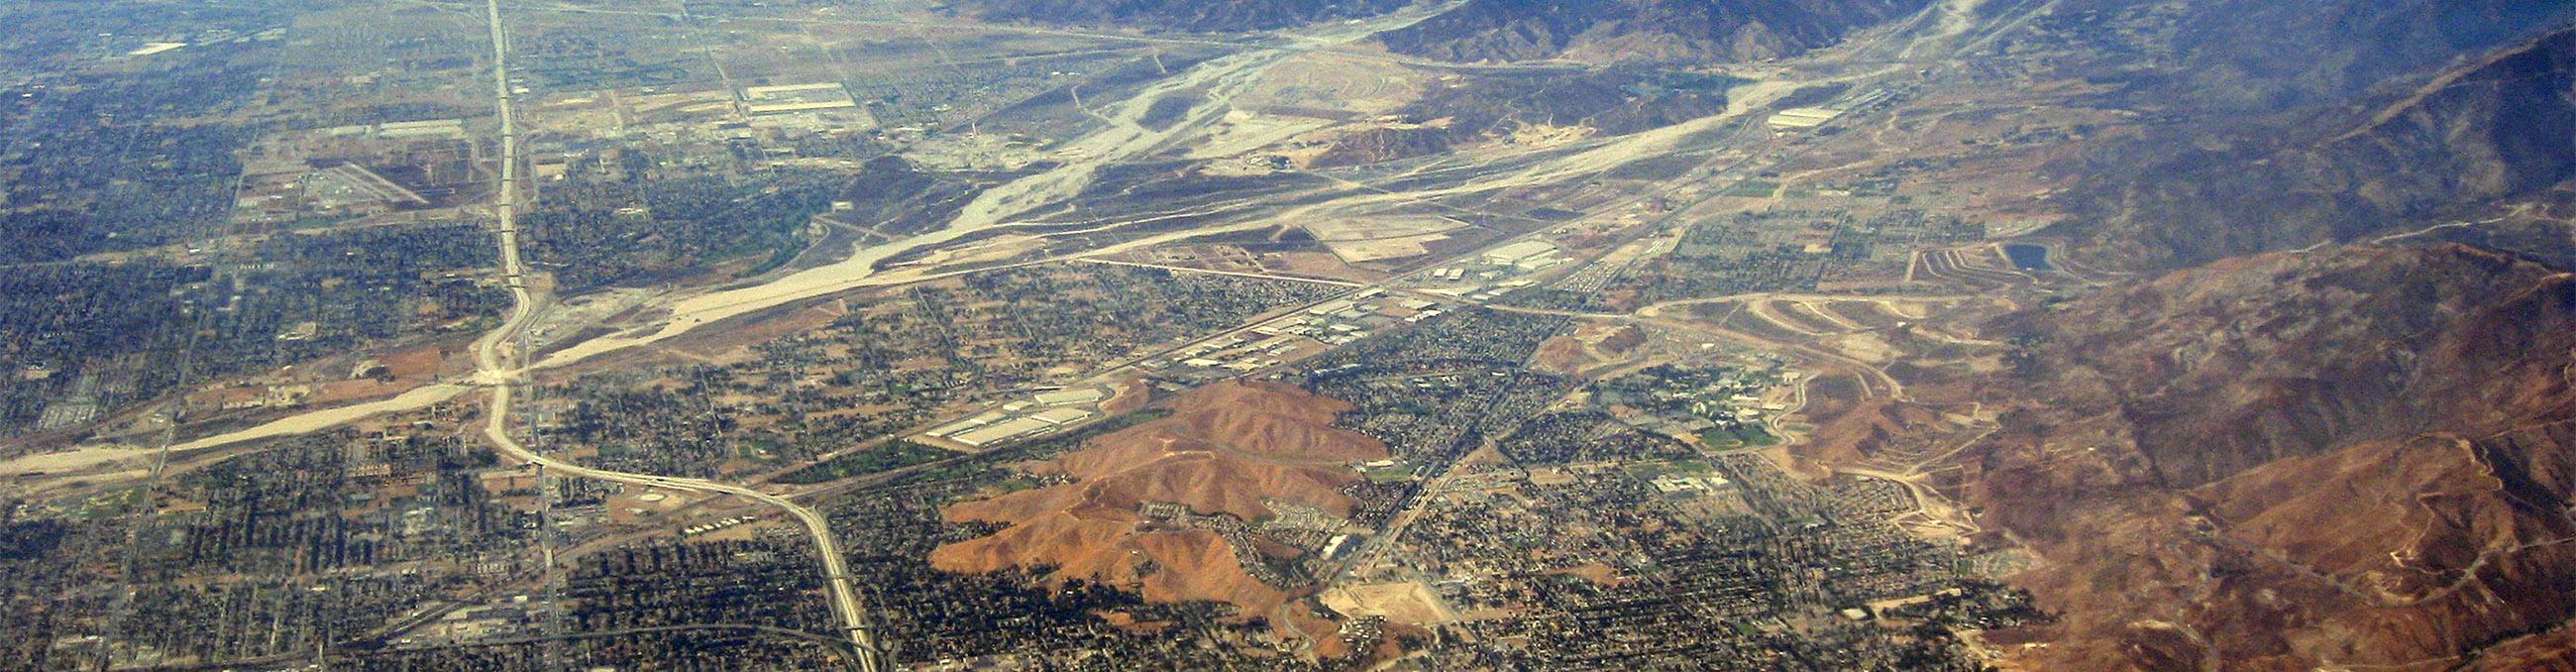 An image of the San Bernardino Valley seen from a bird's eye view. 